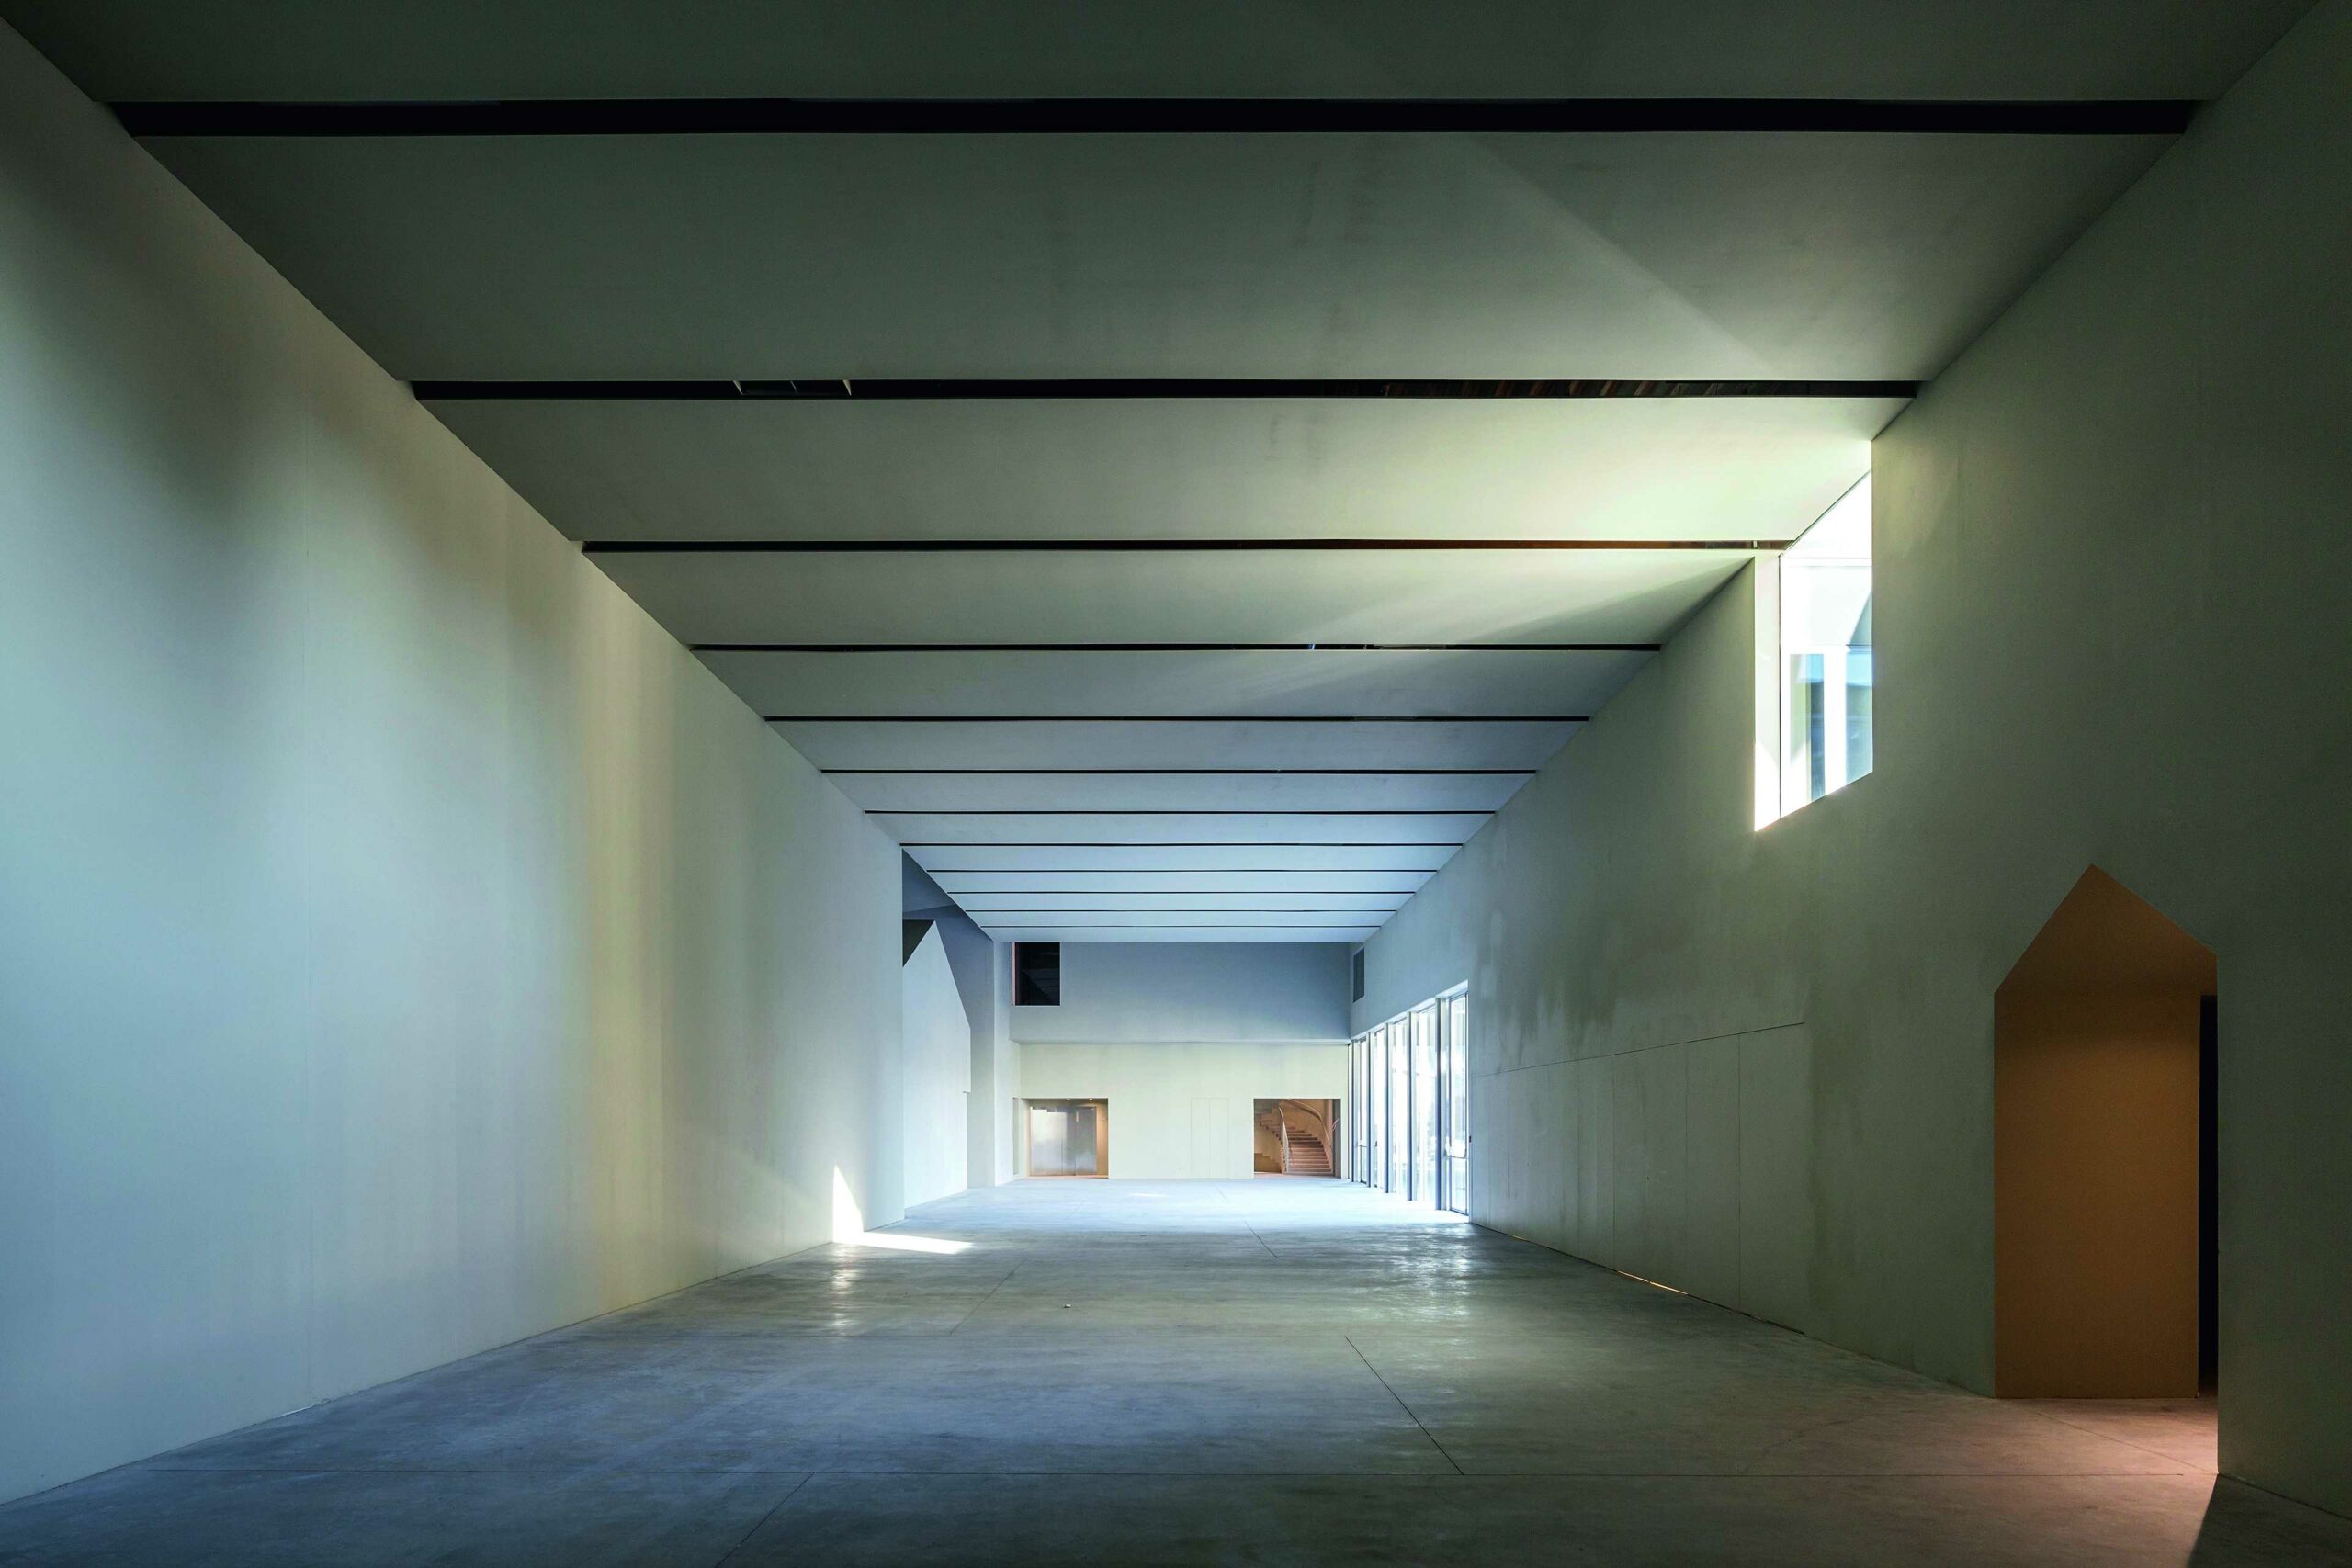 Numero immagine 41 della sezione corrente di Architecture School in Tournai di Cosentino Italia